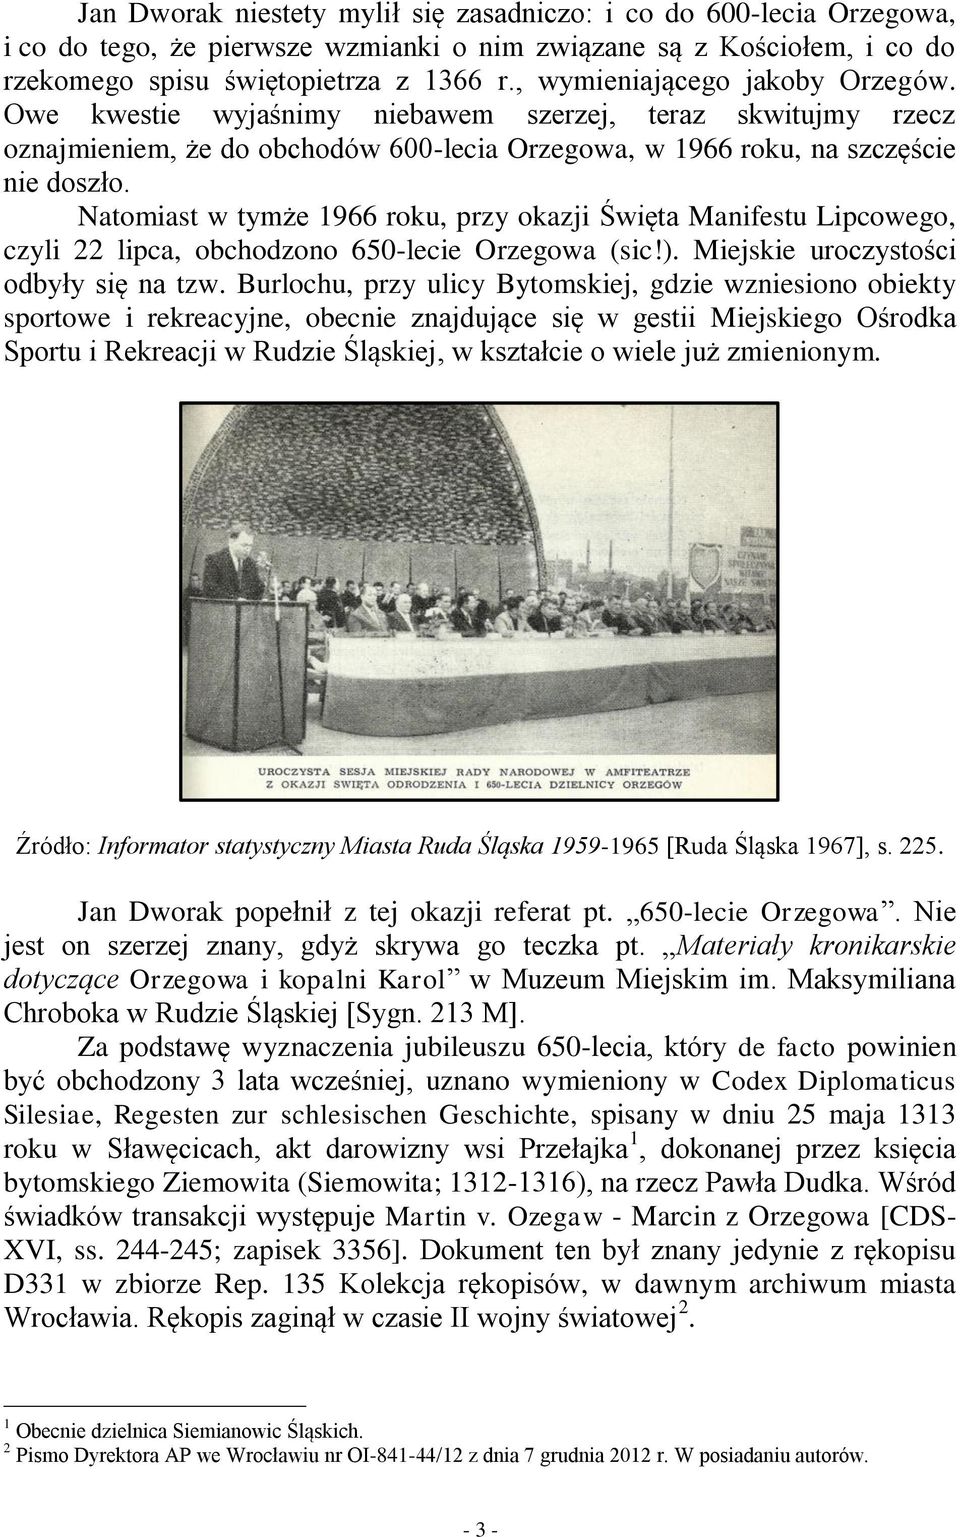 Natomiast w tymże 1966 roku, przy okazji Święta Manifestu Lipcowego, czyli 22 lipca, obchodzono 650-lecie Orzegowa (sic!). Miejskie uroczystości odbyły się na tzw.